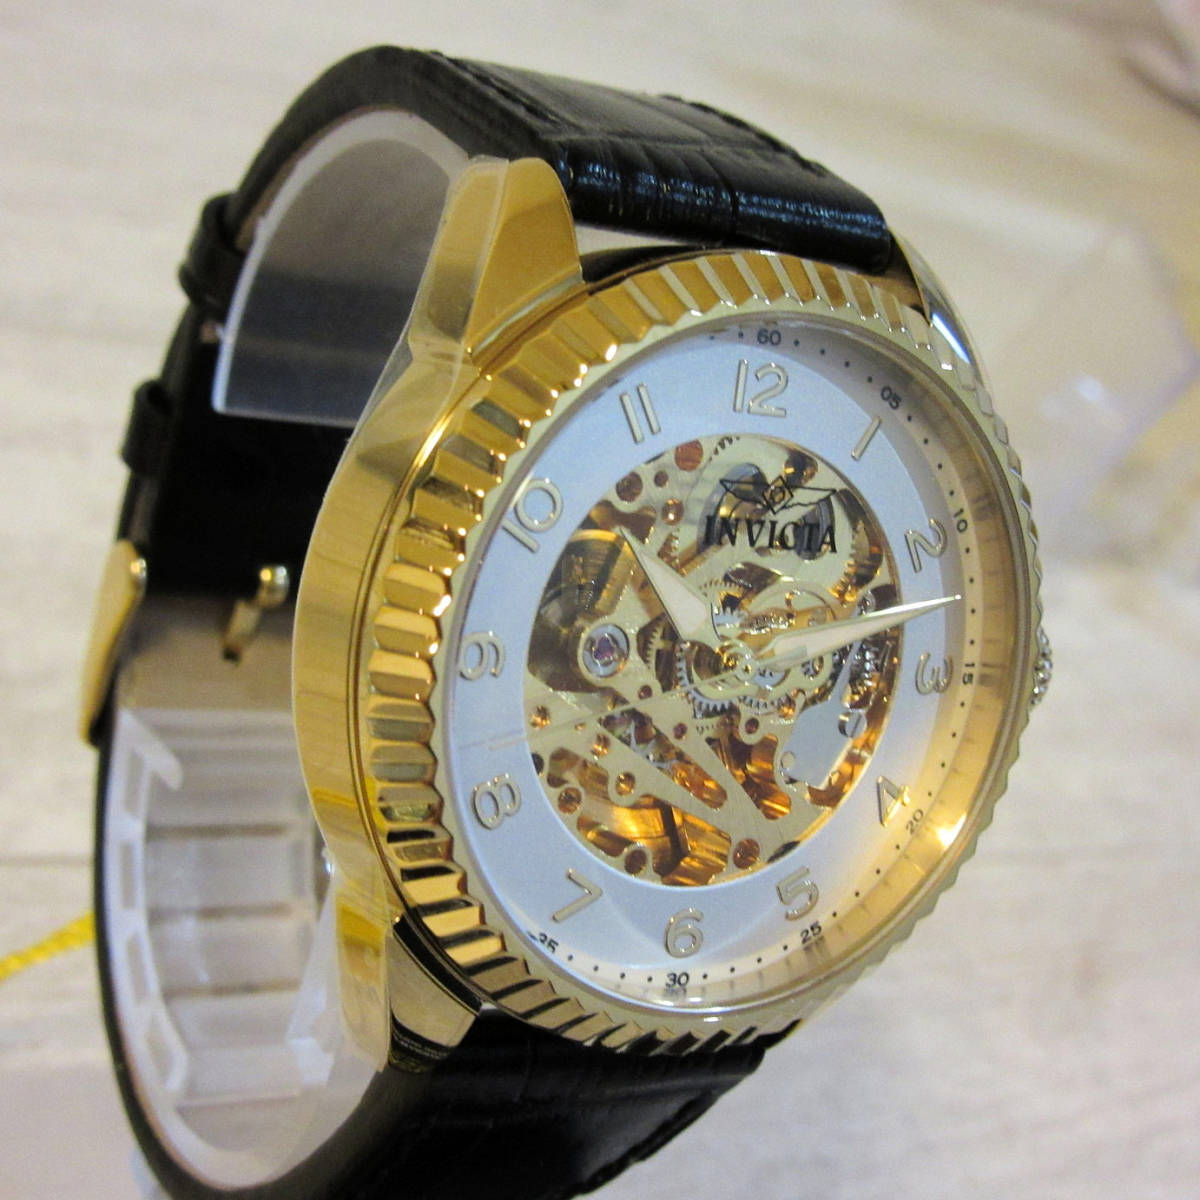 定価7.7万 新品箱入 INVICTA オートマチック 腕時計 スケルトン 美麗 自動巻き 3針 レザーベルト インヴィクタ メンズ ゴールド 金  42mm